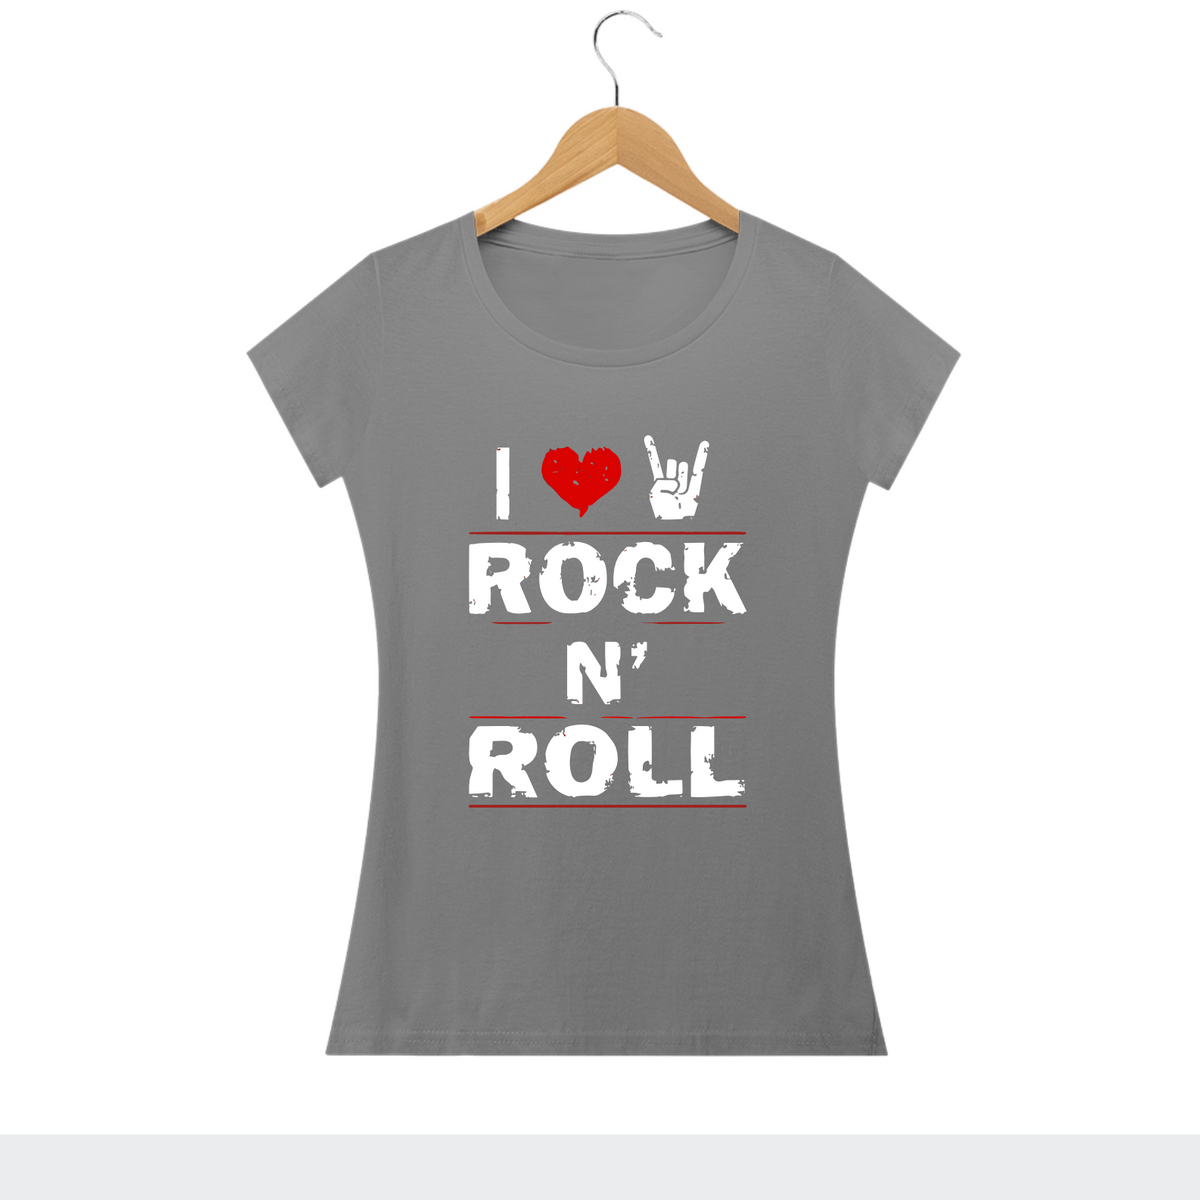 Nome do produto: I LOVE ROCK N ROLL - Camiseta Personalizada com Estampa Frases